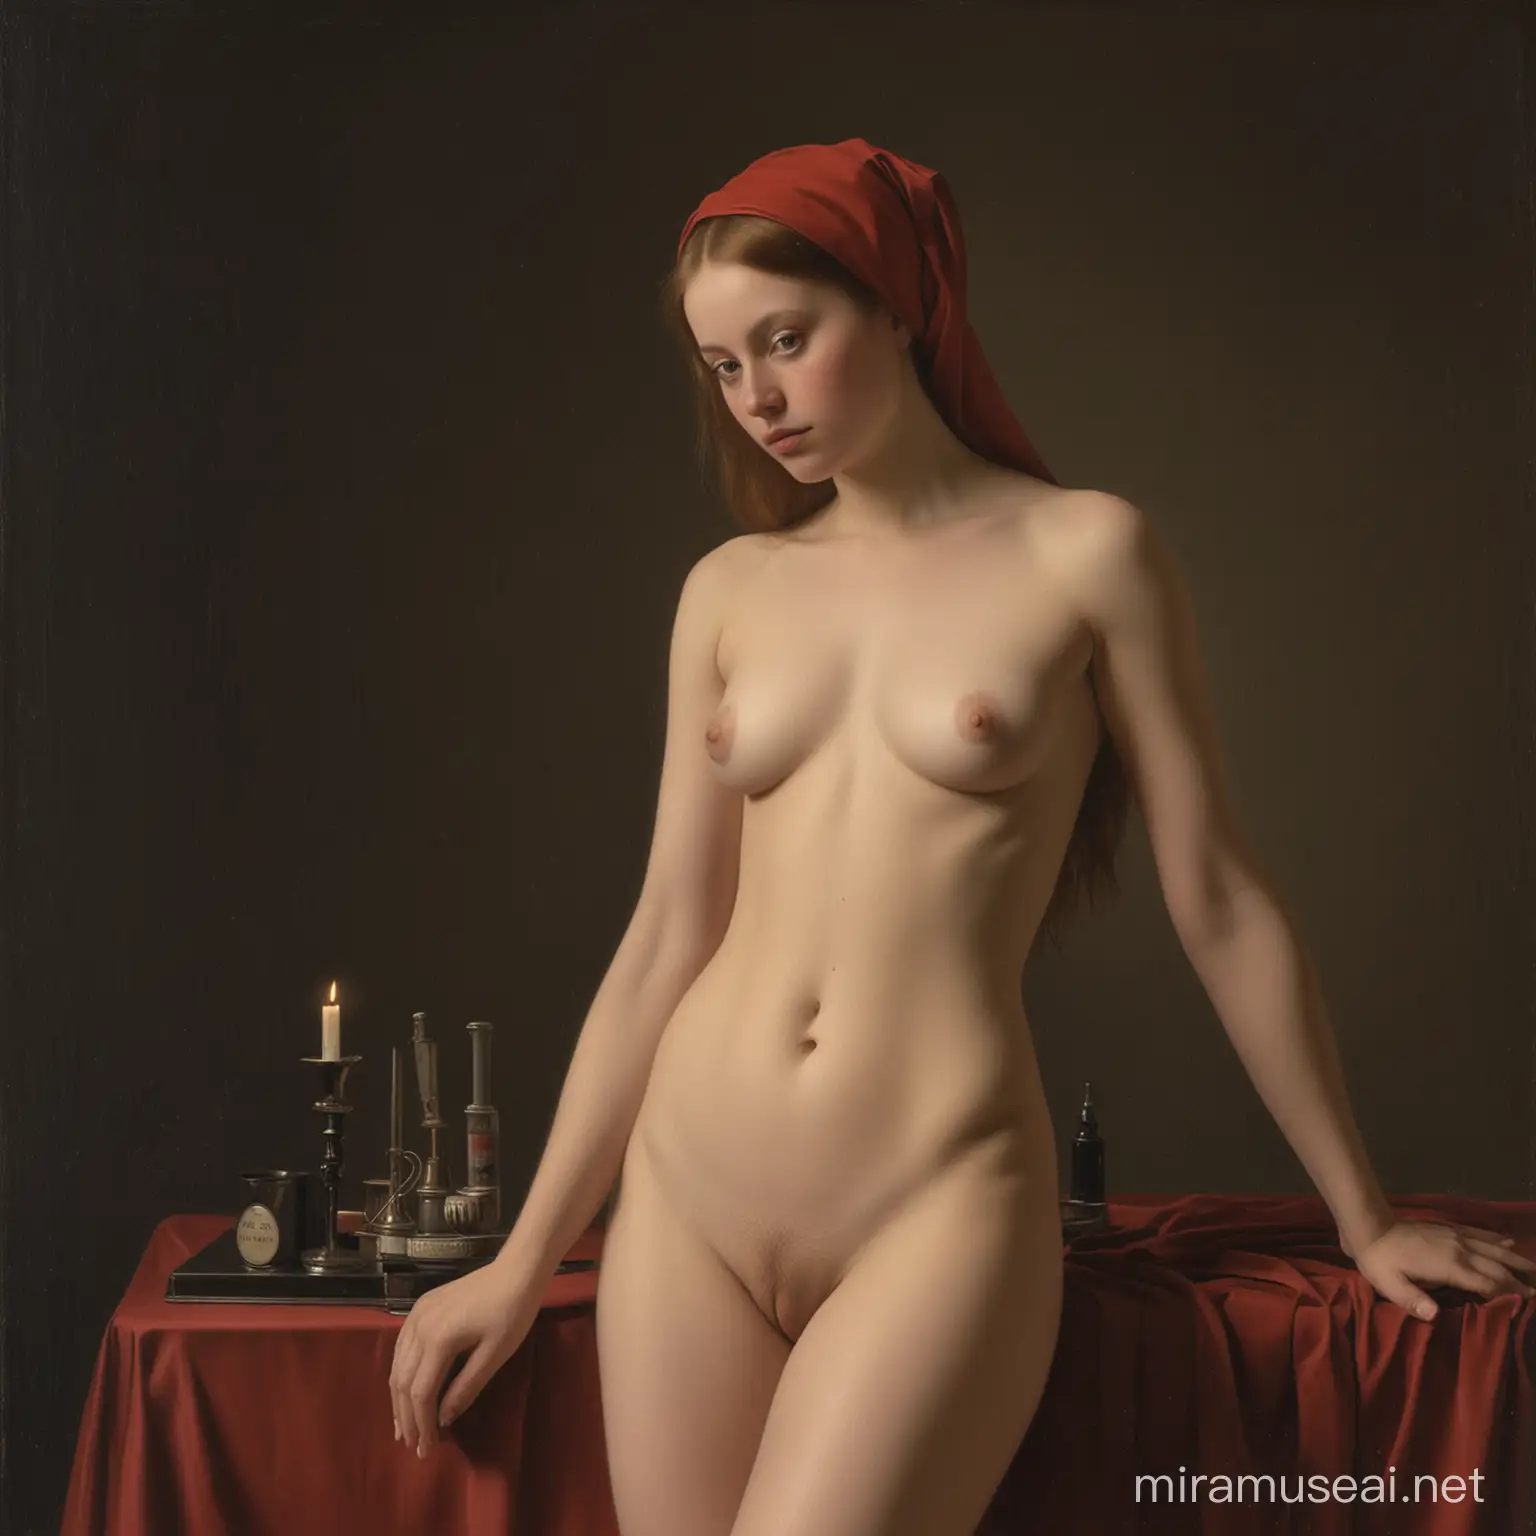 Petrus Christus paints a beautiful nude young woman